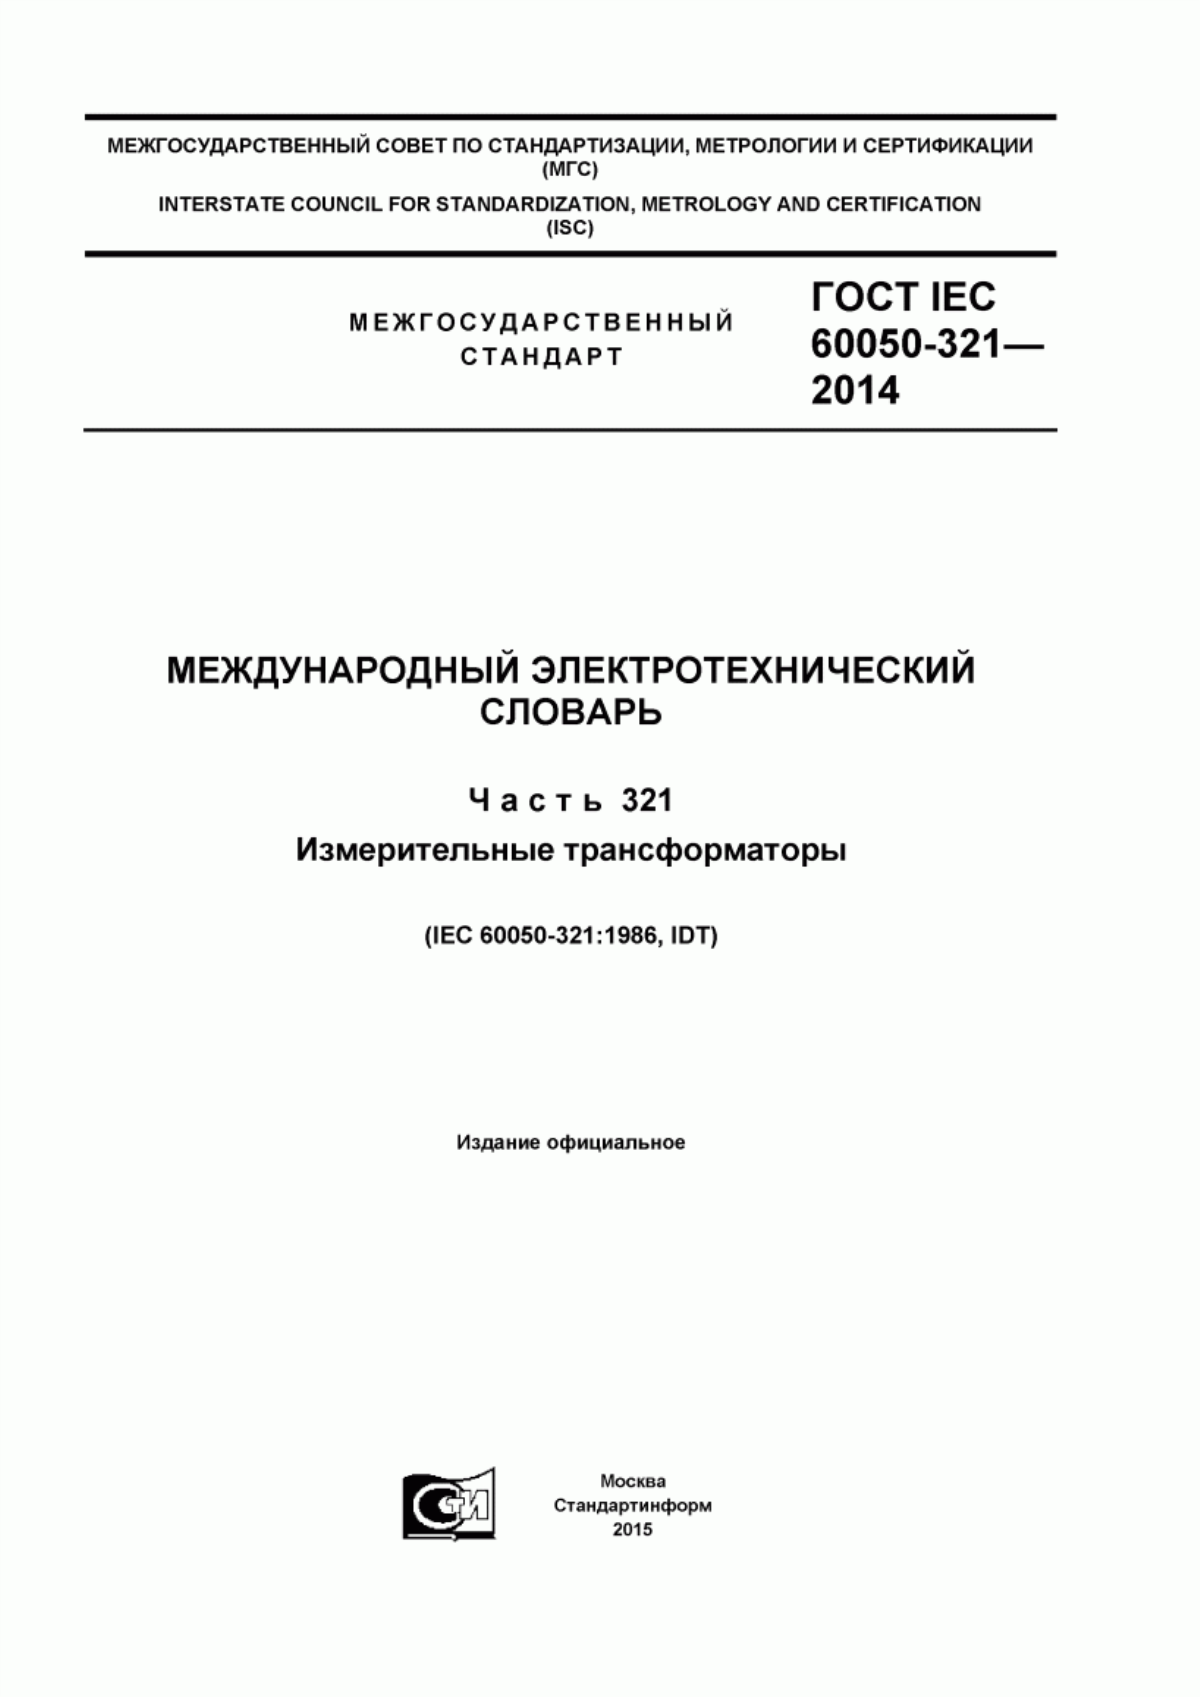 ГОСТ IEC 60050-321-2014 Международный электротехнический словарь. Часть 321. Измерительные трансформаторы